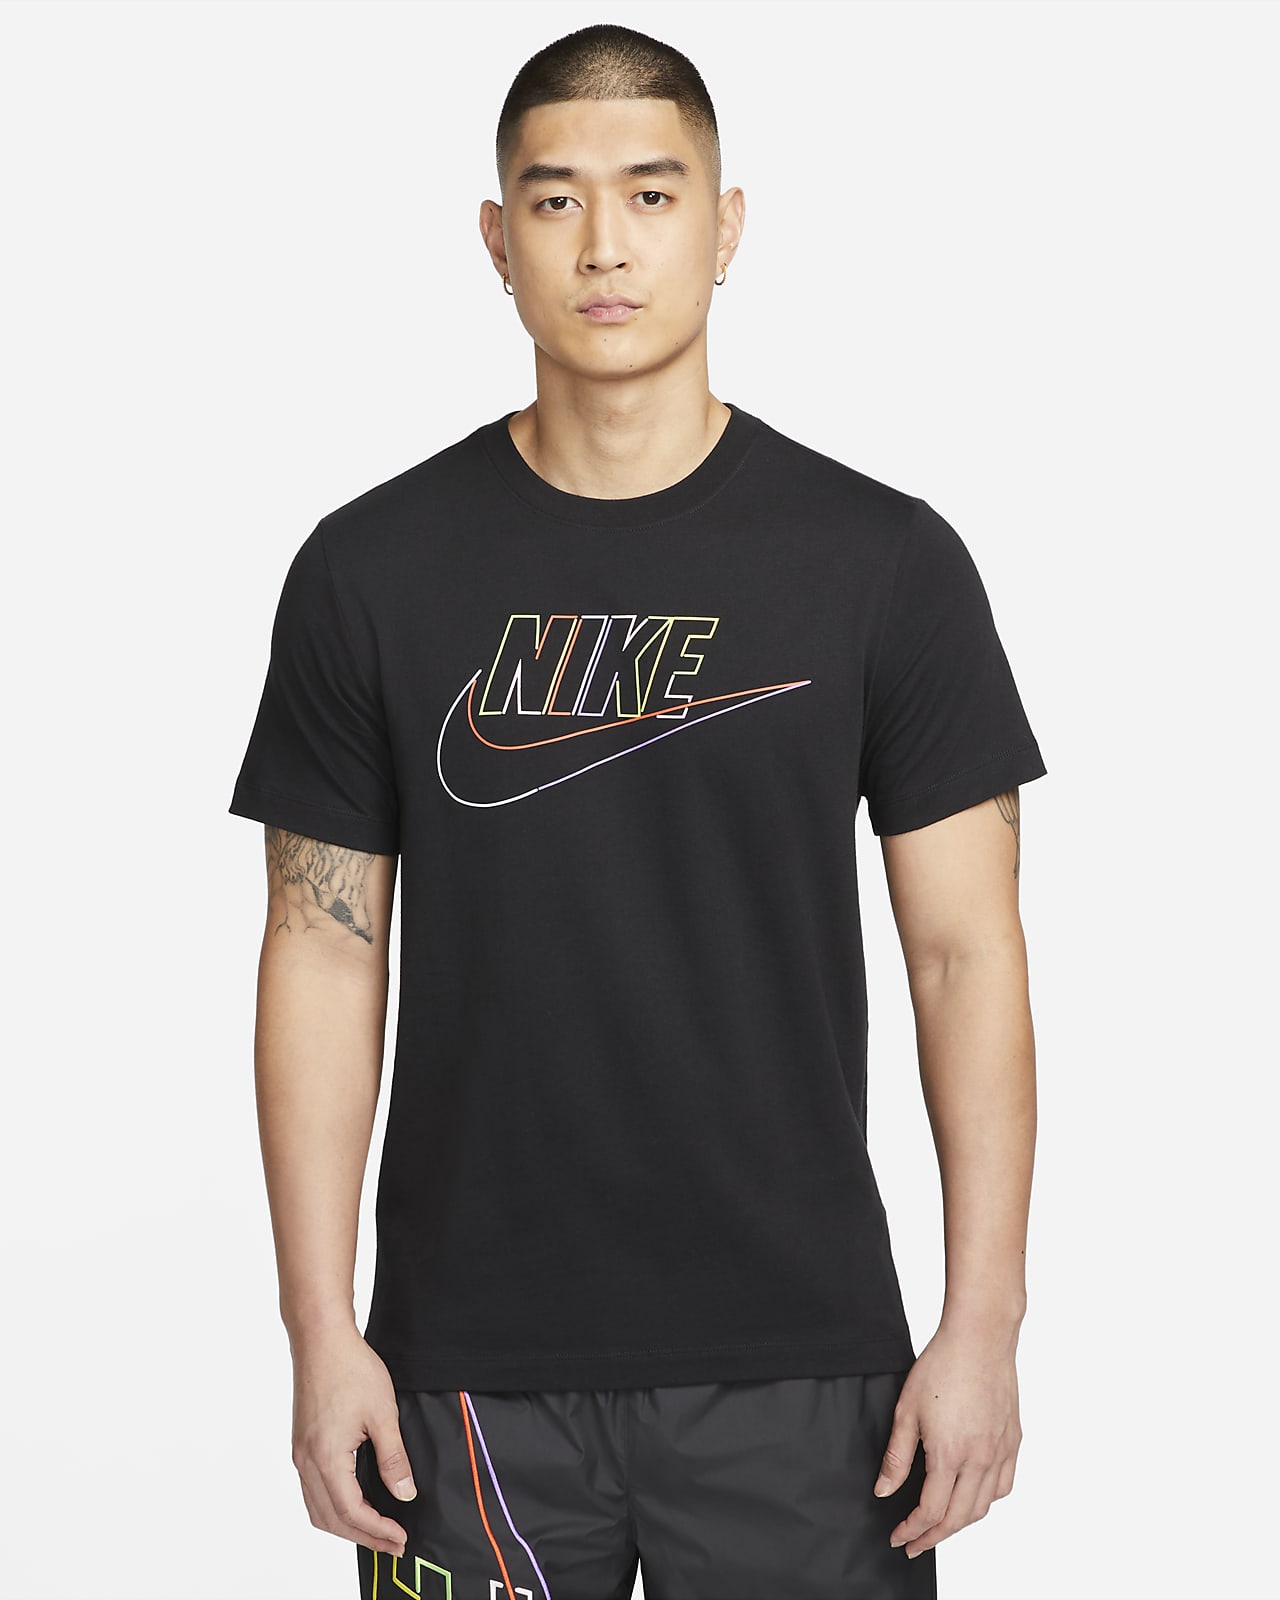 NIKE公式】ナイキ スポーツウェア メンズ Tシャツ.オンラインストア (通販サイト)